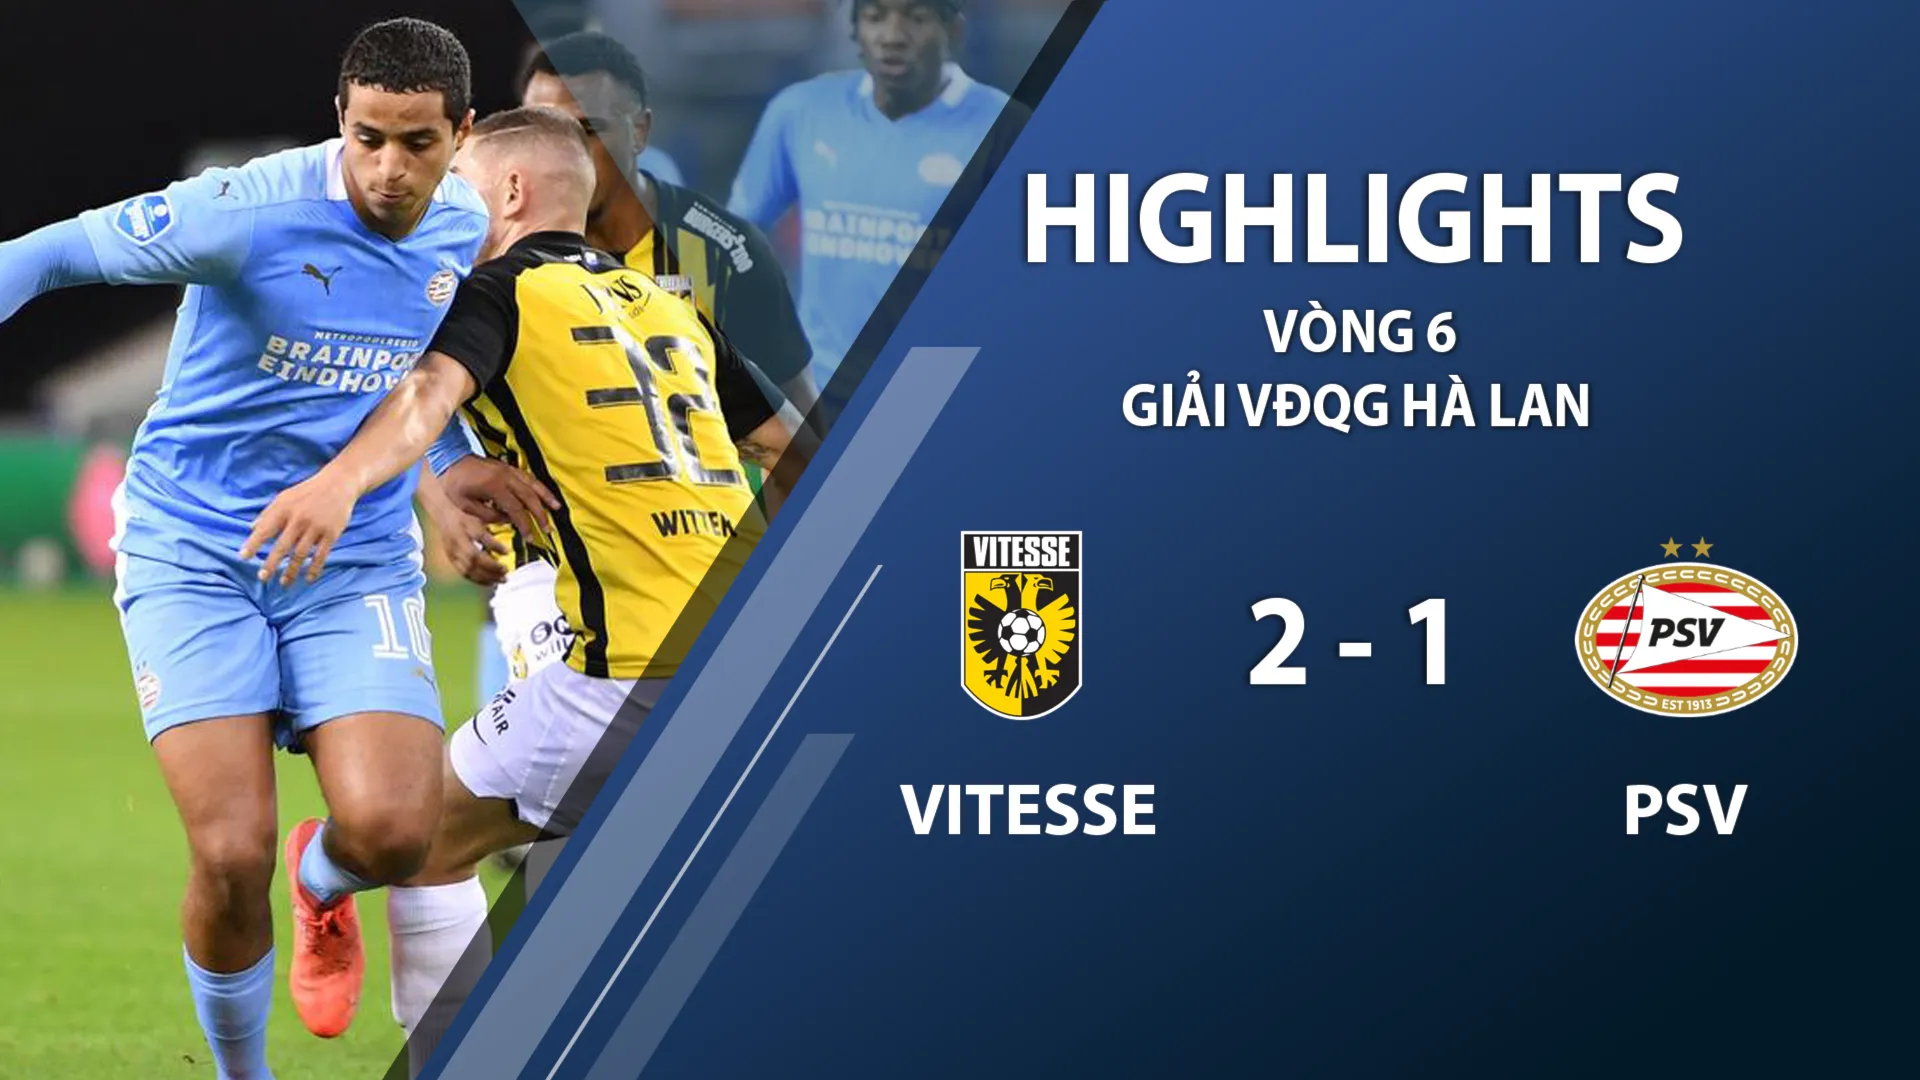 Highlights Vitesse 2-1 PSV Eindhoven (vòng 6 giải VĐQG Hà Lan 2020/21)